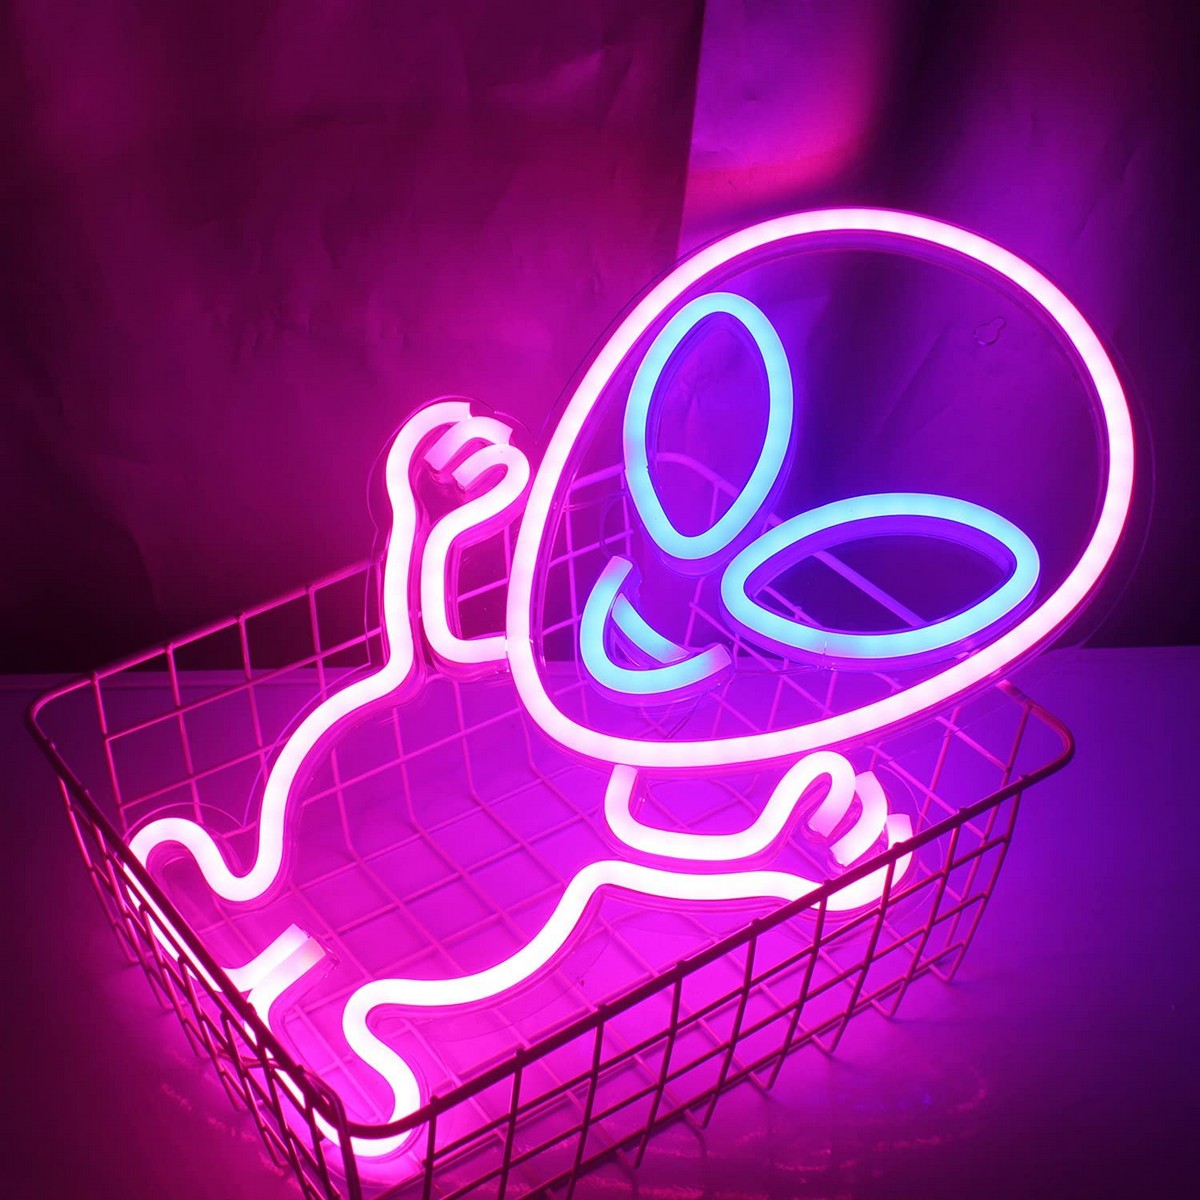 alienígena brilhante - parede com logotipo de néon